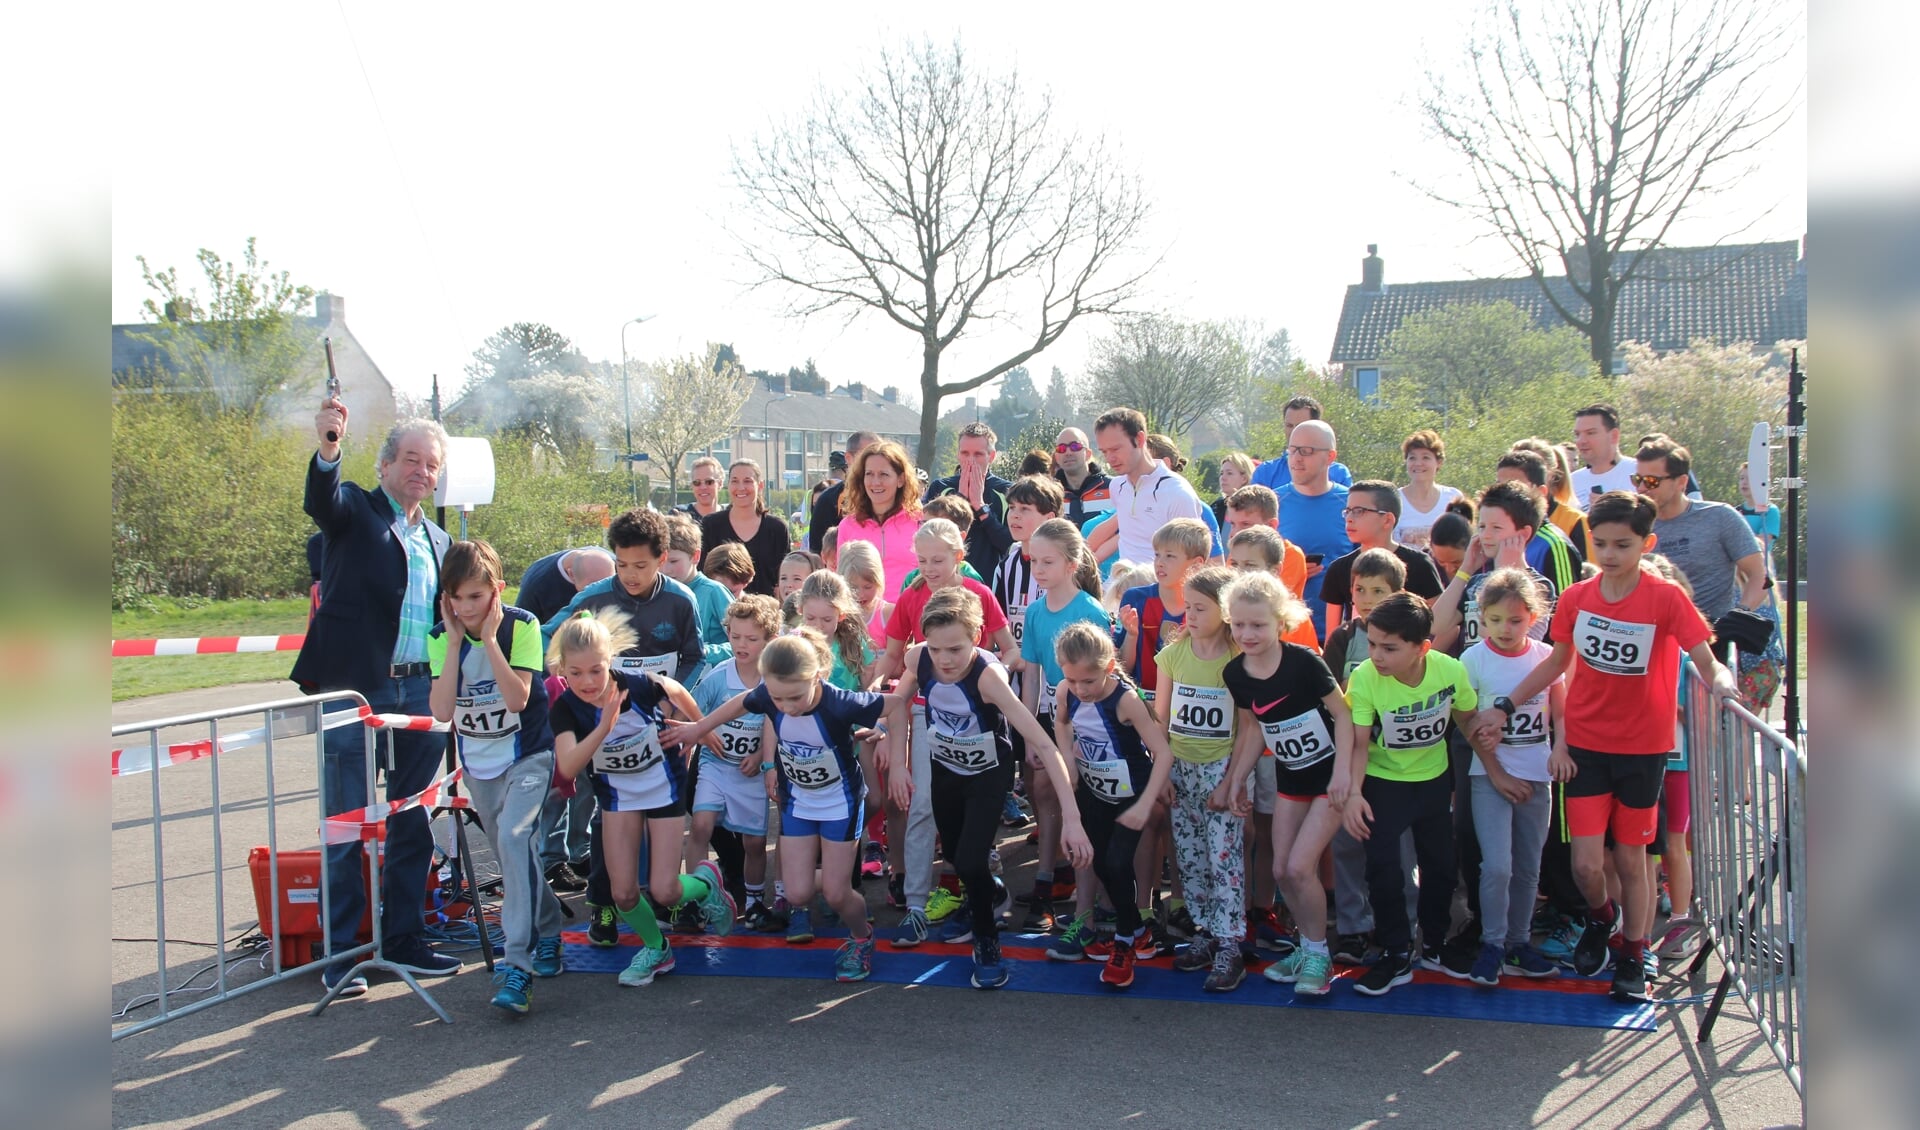 De allereerste editie van Running De Bilt vond op zondag 2 april 2017  plaats. Toenmalig wethouder Ebbe Rost van Tonningen loste het startschot voor de kidsrun. 